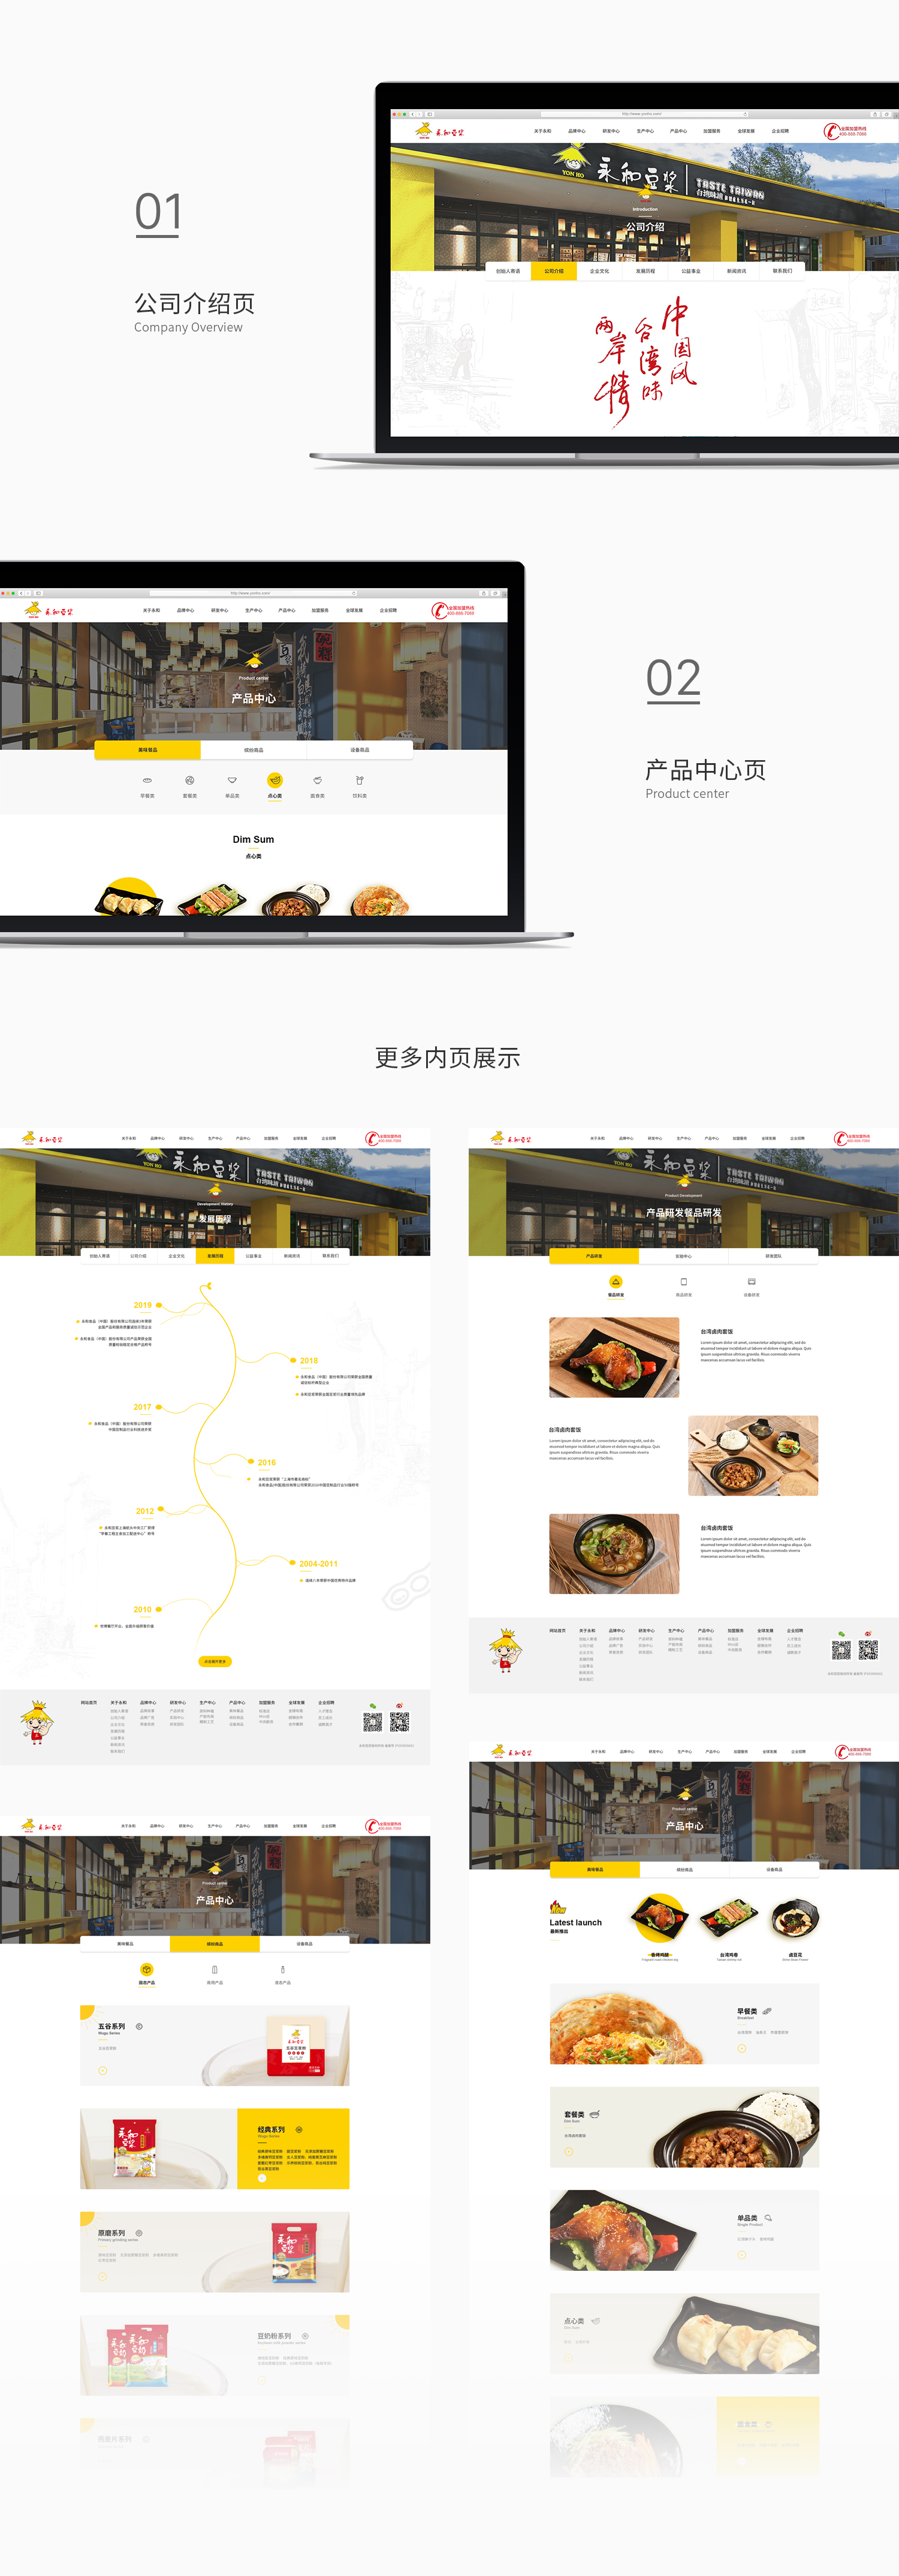 永和食品网站建设开发-新媒体营销,新媒体广告公司,上海网络营销,微信代运营,高端网站建设,网站建设公司